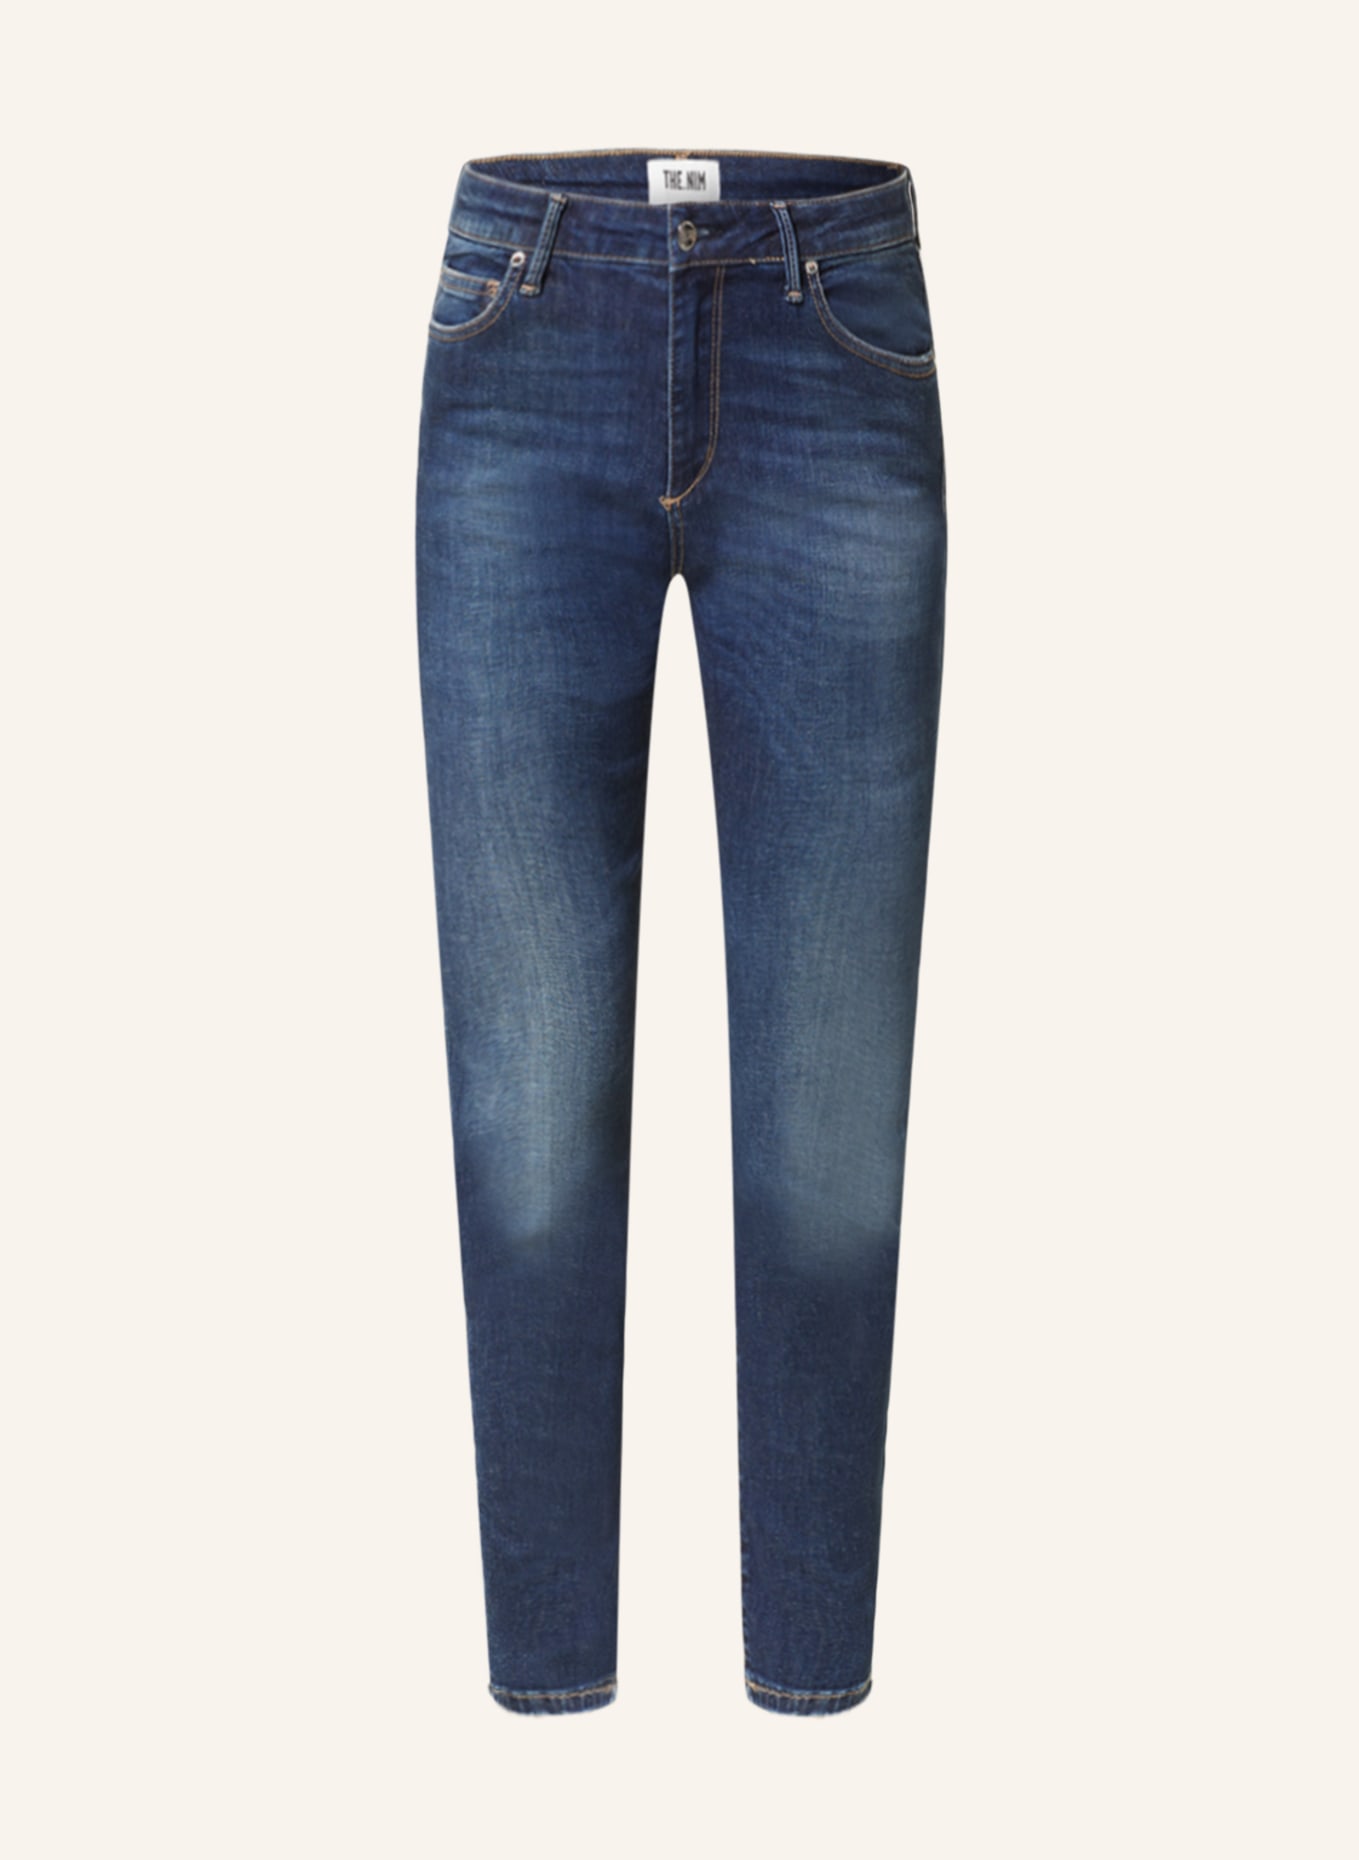 THE.NIM STANDARD Jeans BONNIE BOY, Farbe: W514-OTB ORGANIC TRUE BLUE (Bild 1)